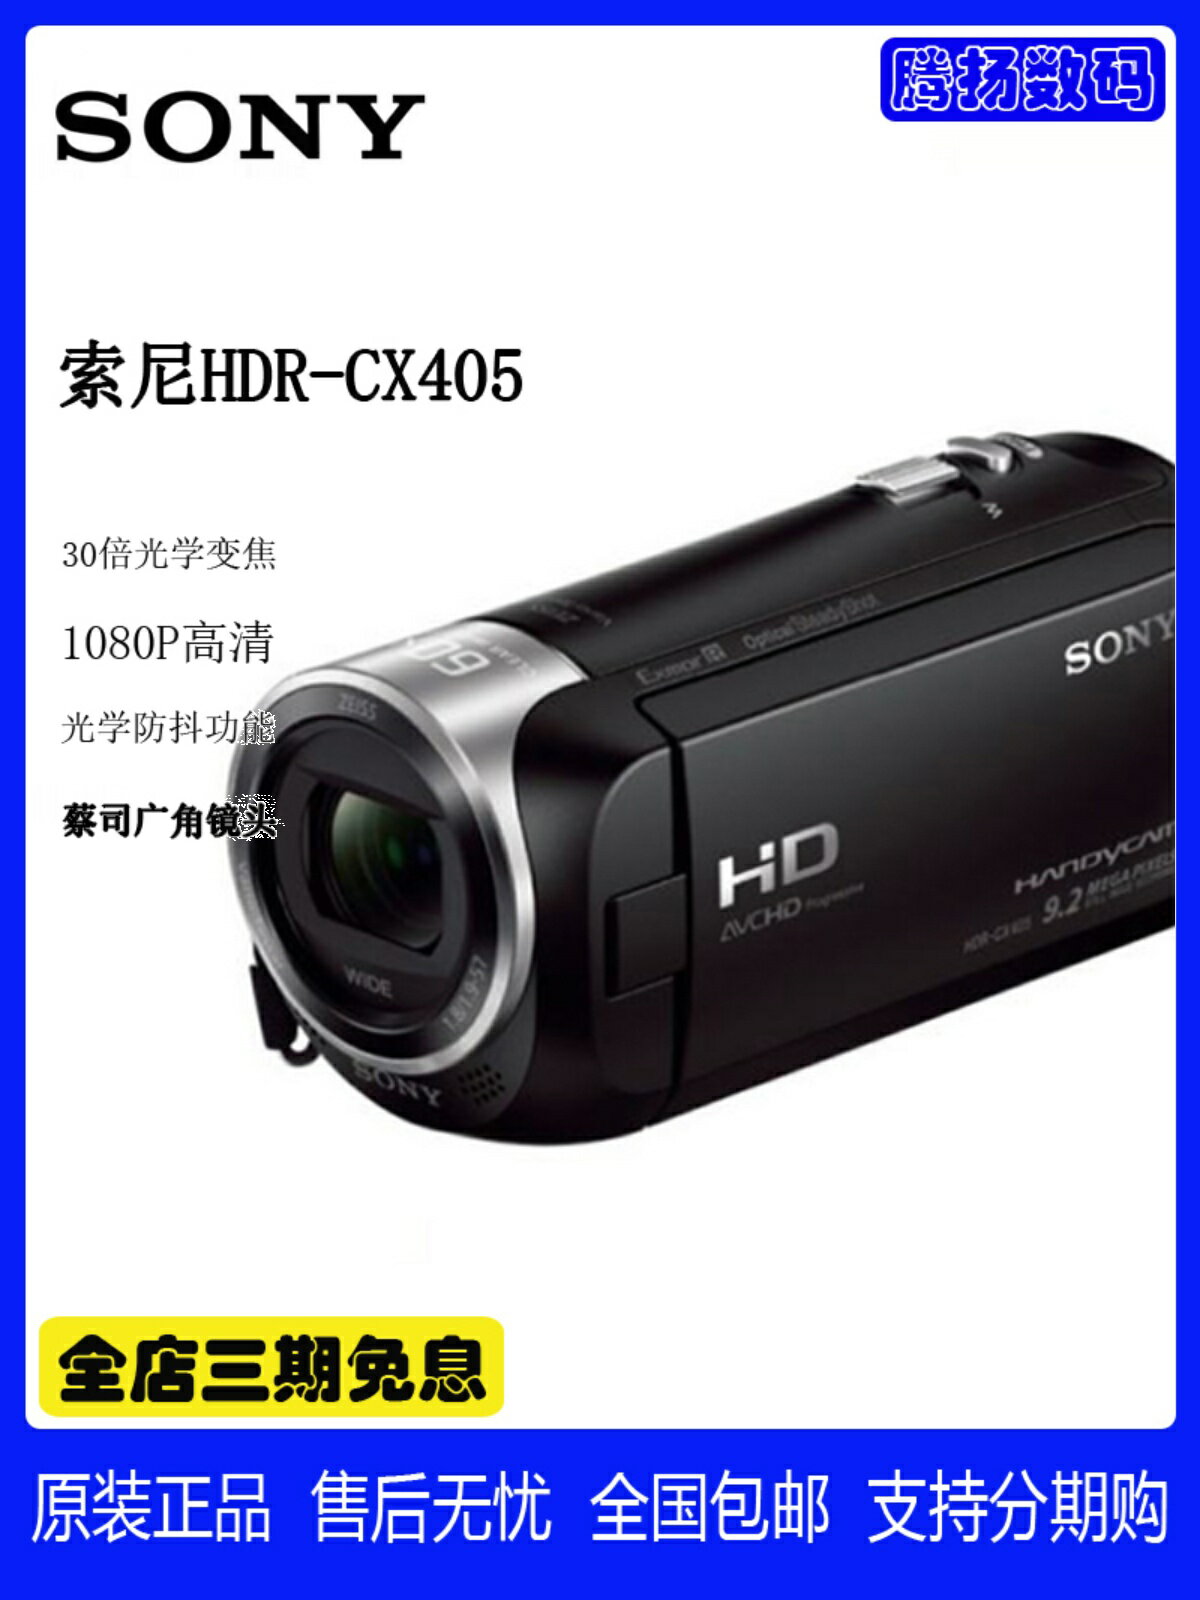 正品行貨 Sony/索尼HDR-CX405 30倍光學變焦數碼攝像機 索尼PJ410